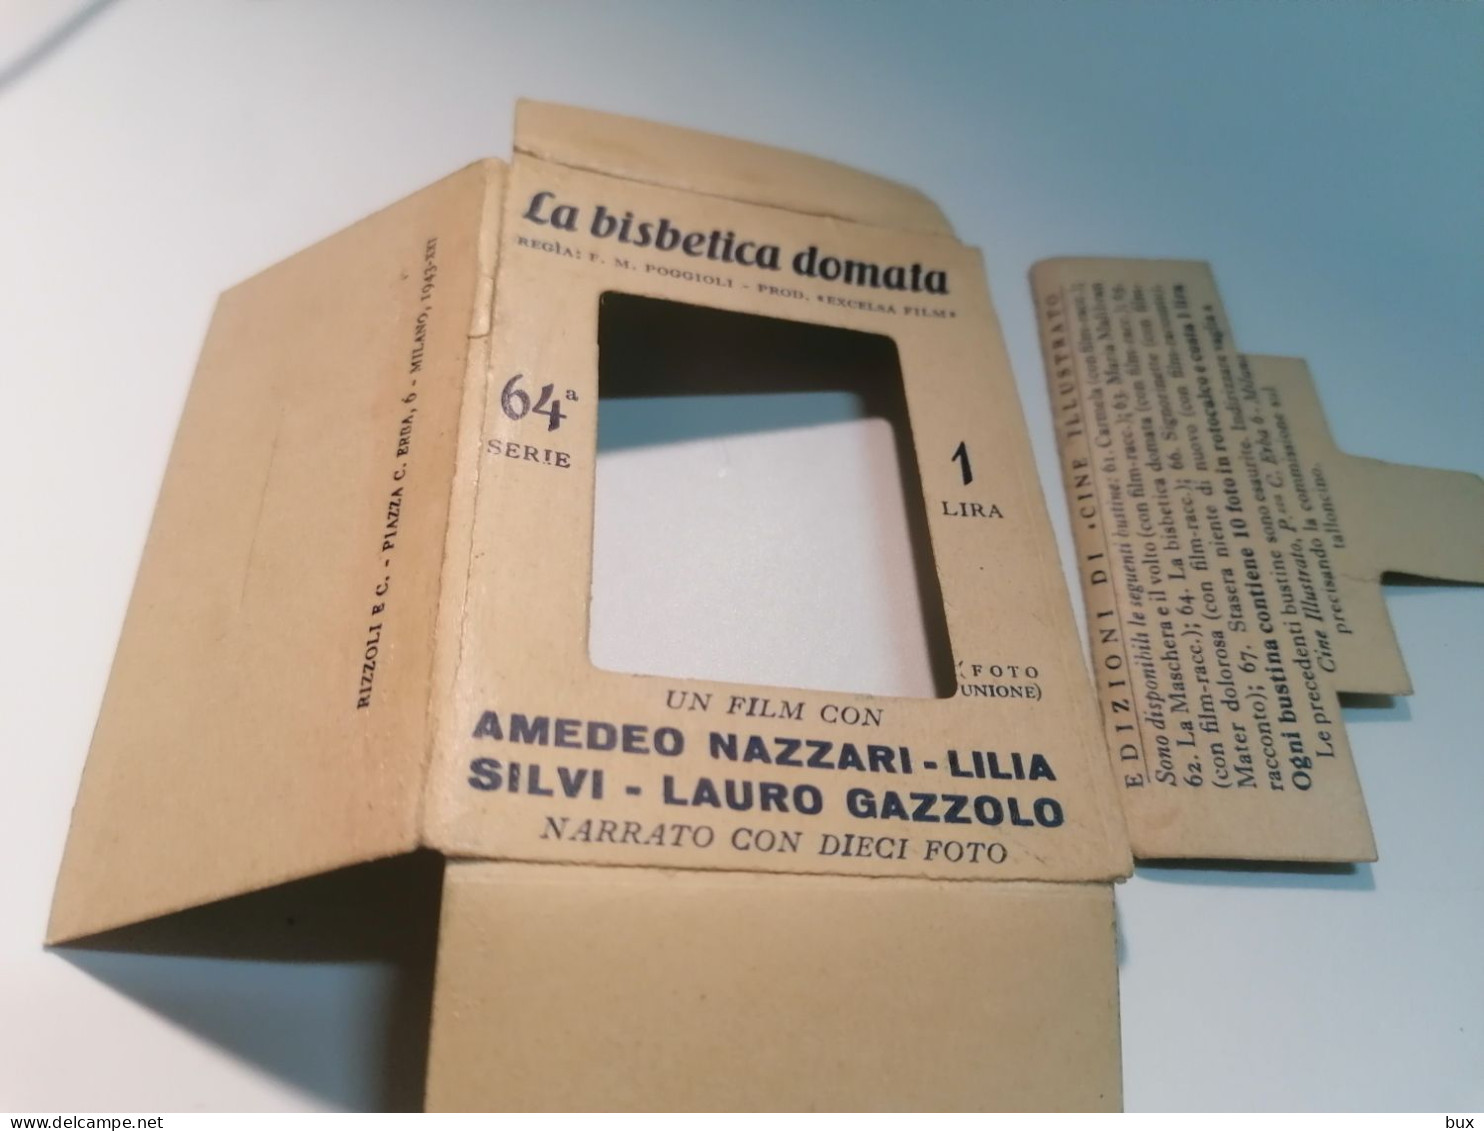 1943 film La bisbetica domato box con 10 piccole foto foto con Amedeo Nazzari